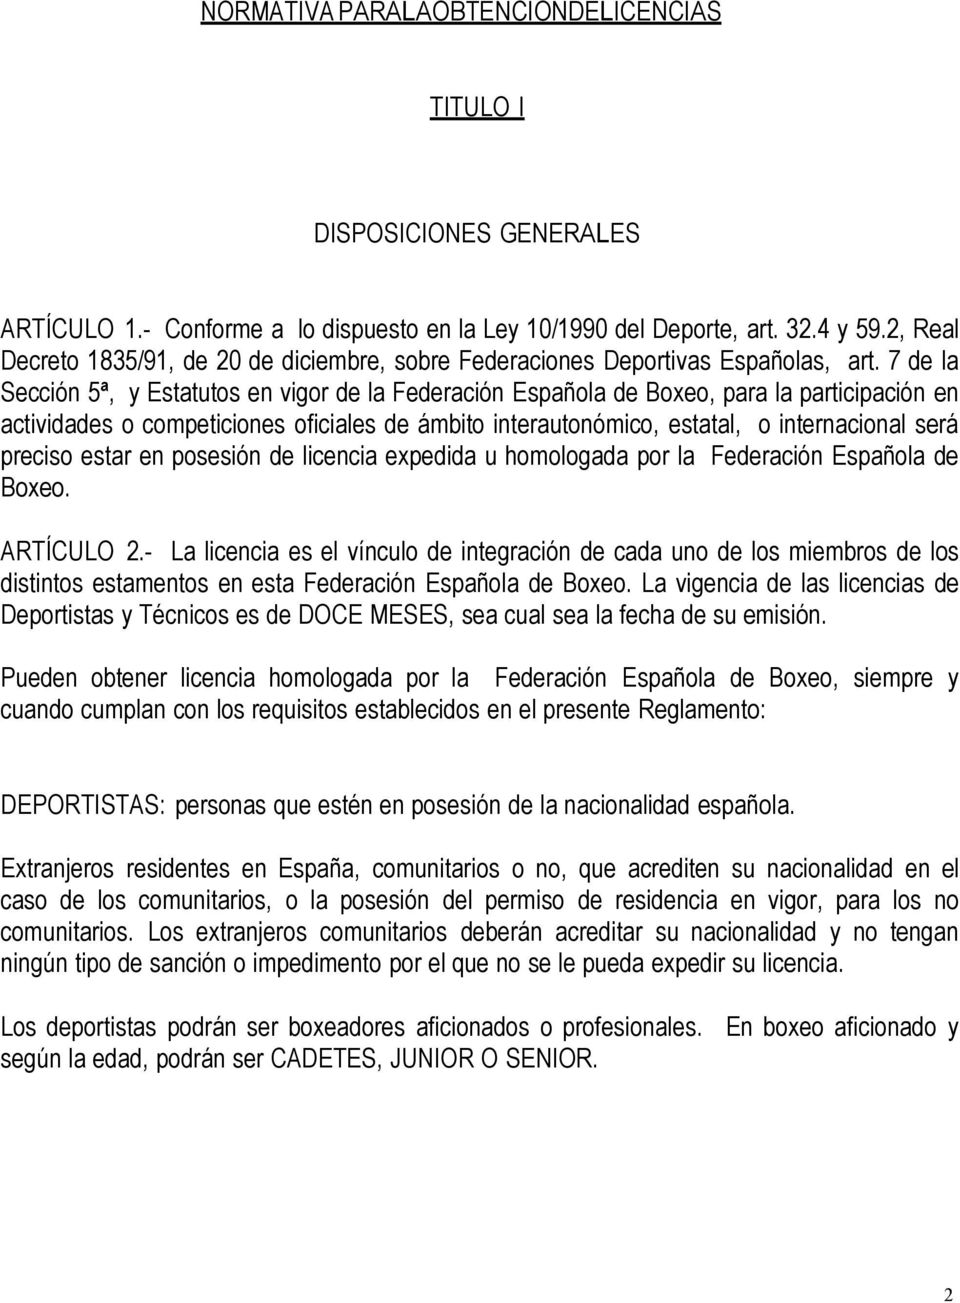 7 de la Sección 5ª, y Estatutos en vigor de la Federación Española de Boxeo, para la participación en actividades o competiciones oficiales de ámbito interautonómico, estatal, o internacional será